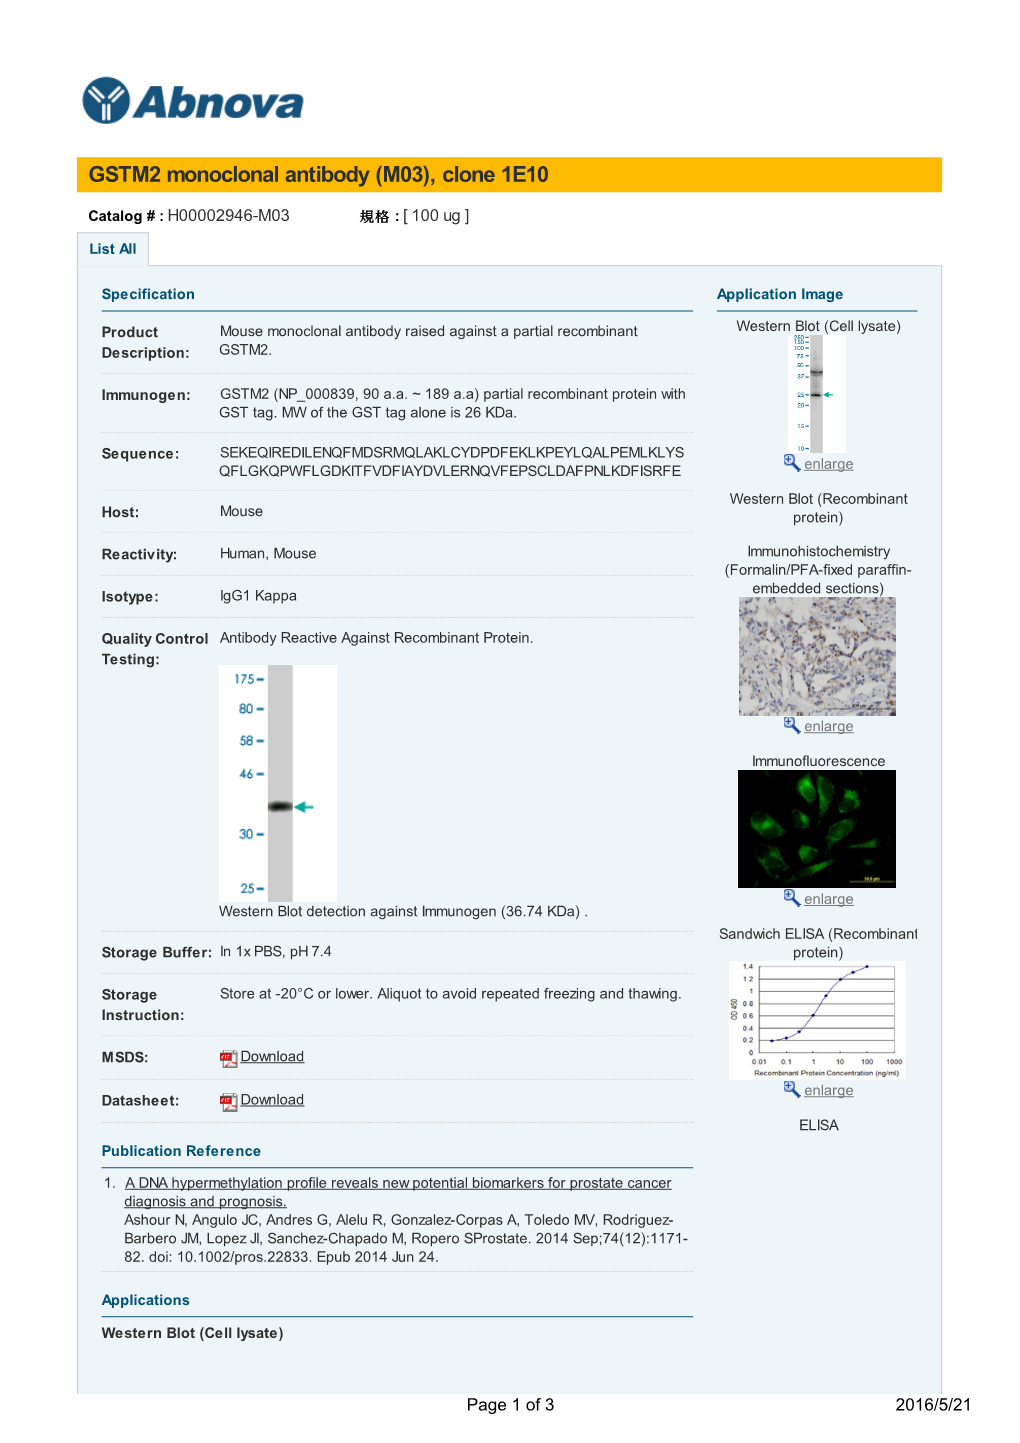 GSTM2 Monoclonal Antibody (M03), Clone 1E10